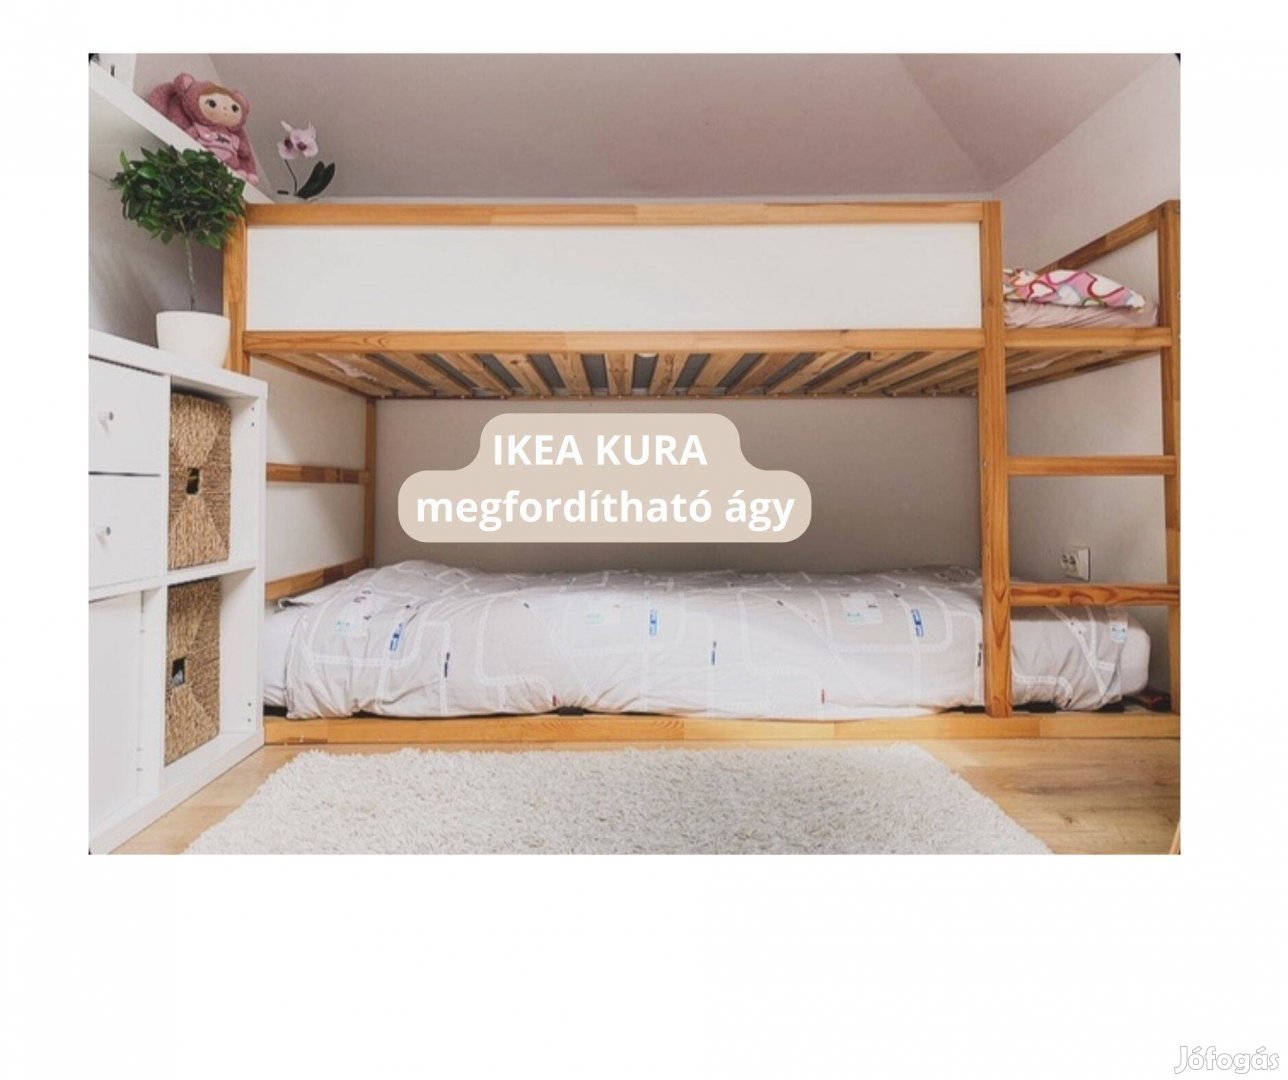 IKEA Kura megfordítható ágy